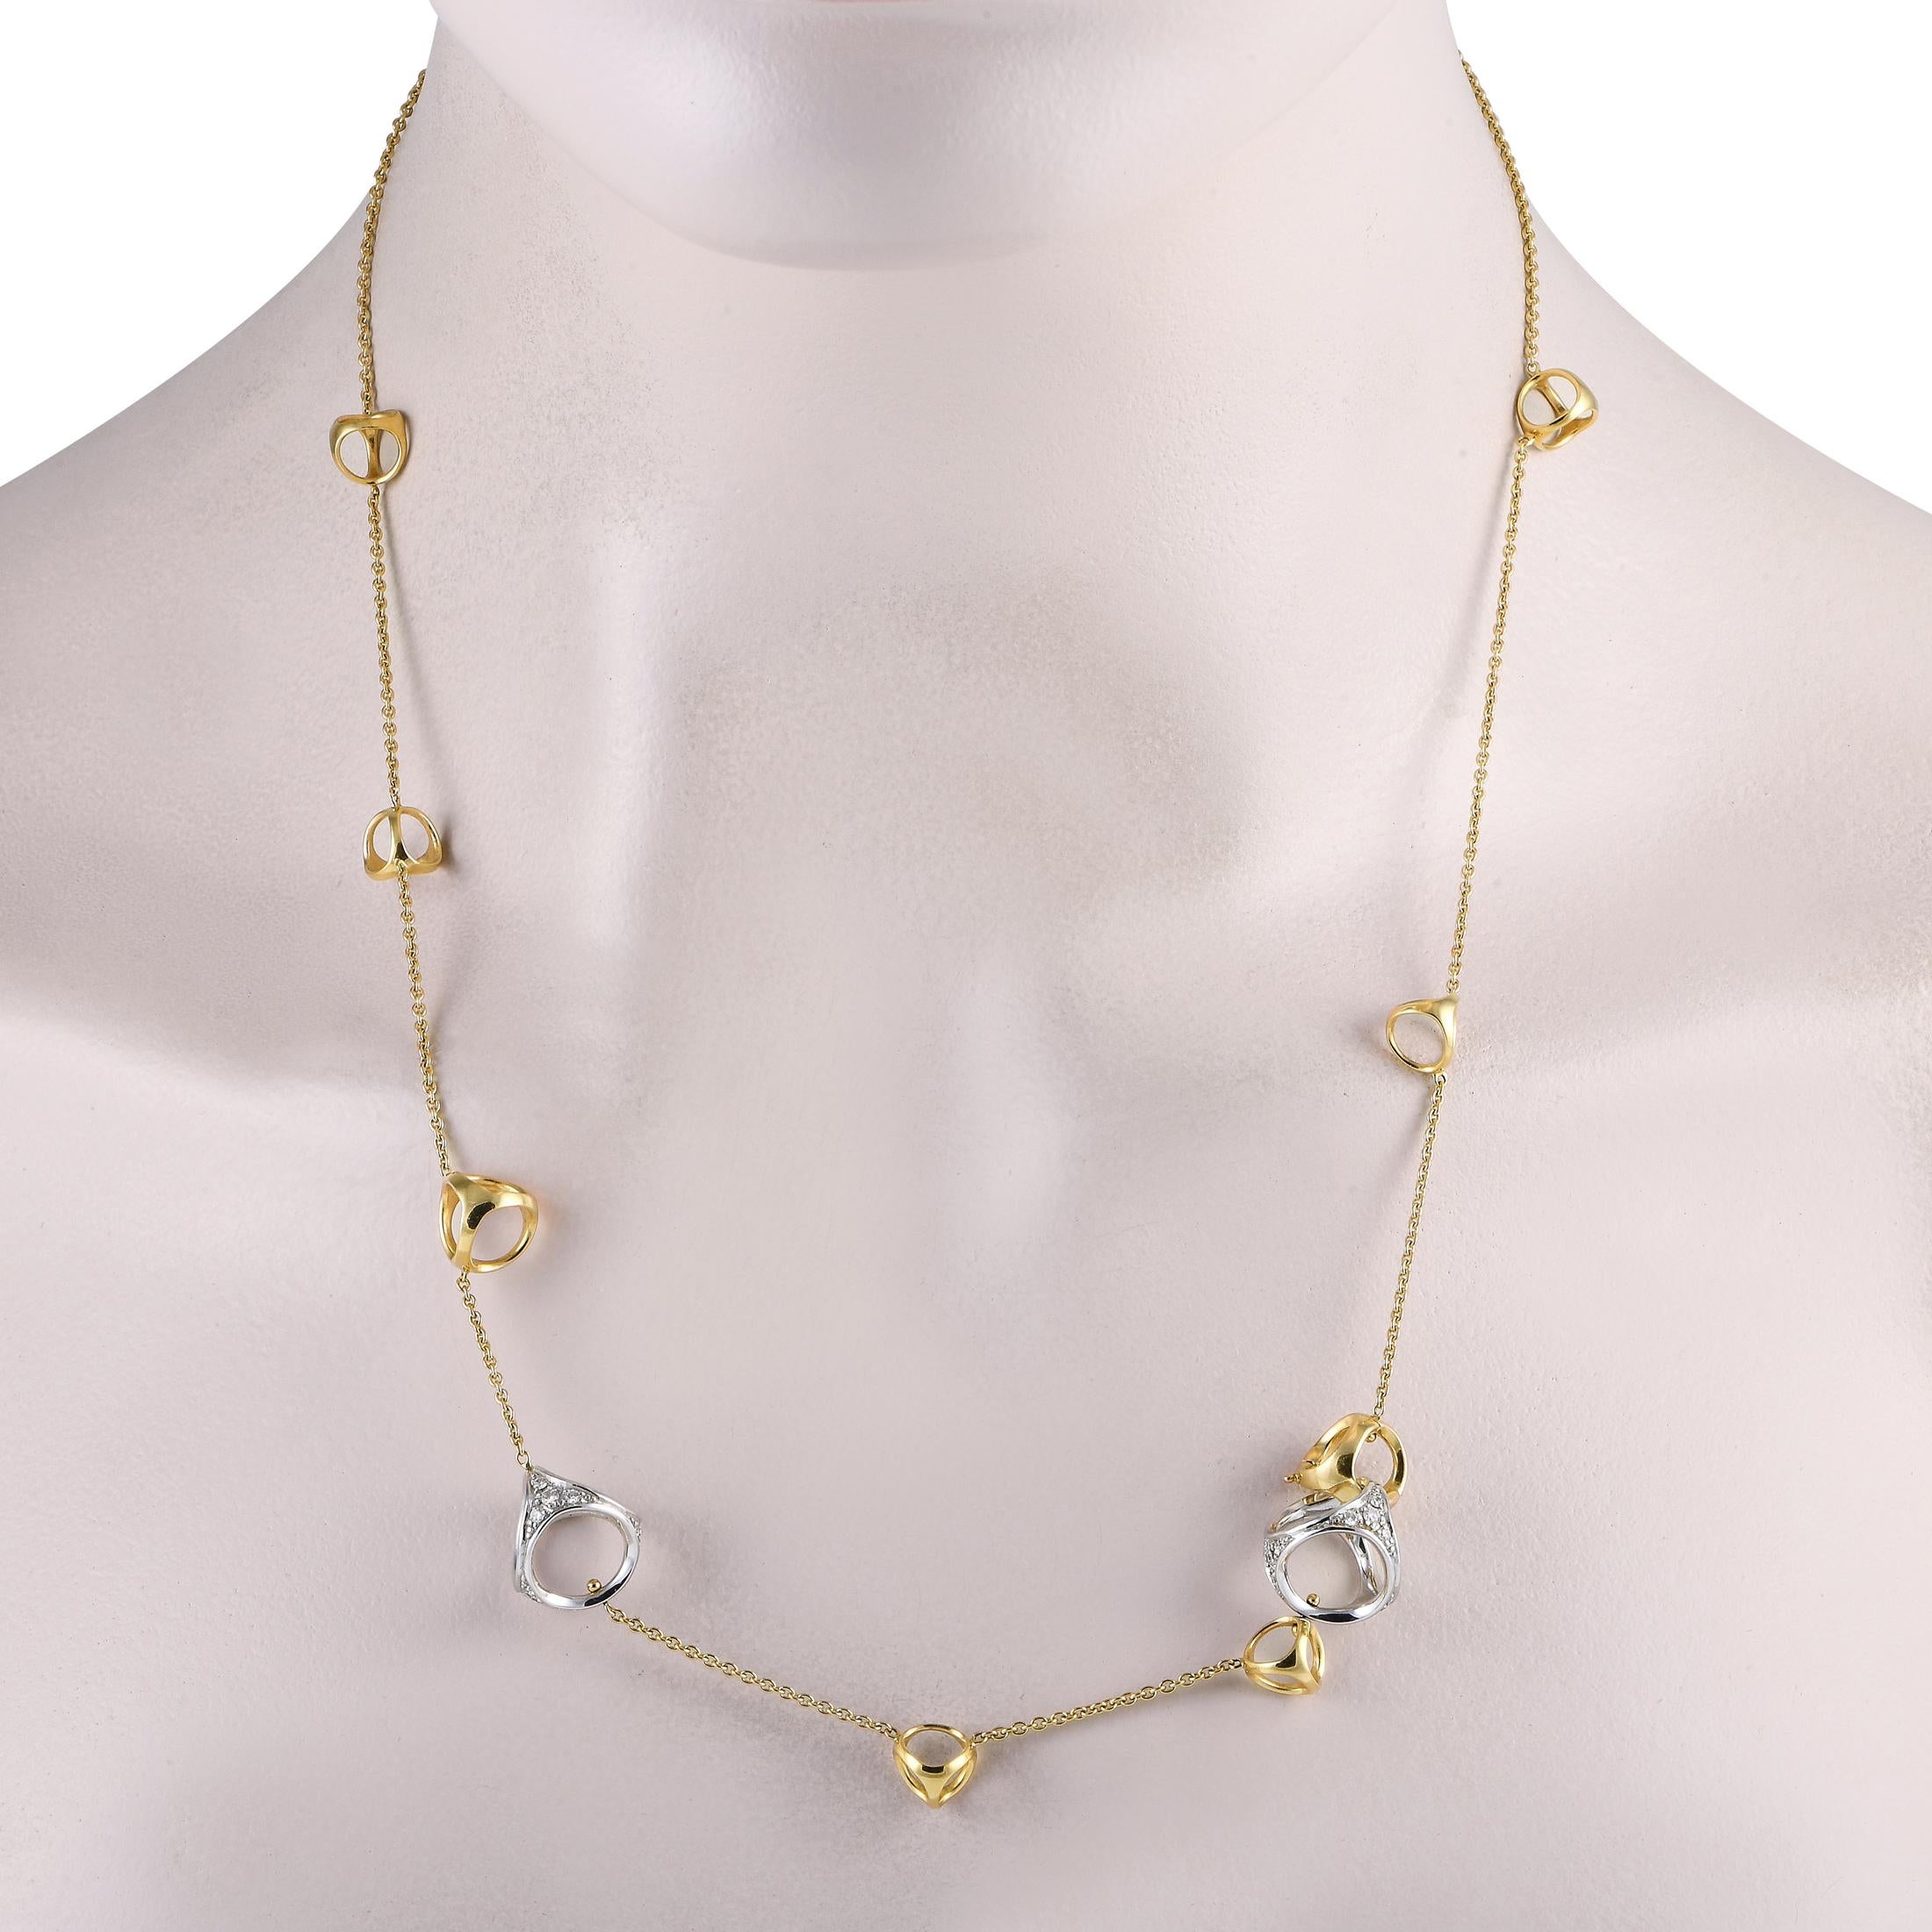 Eine schöne Kreation von Di Modolo ist diese gelbgoldene Halskette, die einen trendigen Look mit zeitlosem Charme verbindet. Die 22 lange Kette ist mit geometrischen Gliedern aus Gelbgold verziert, die an eine Bombe erinnern. Die Di Modolo 18K